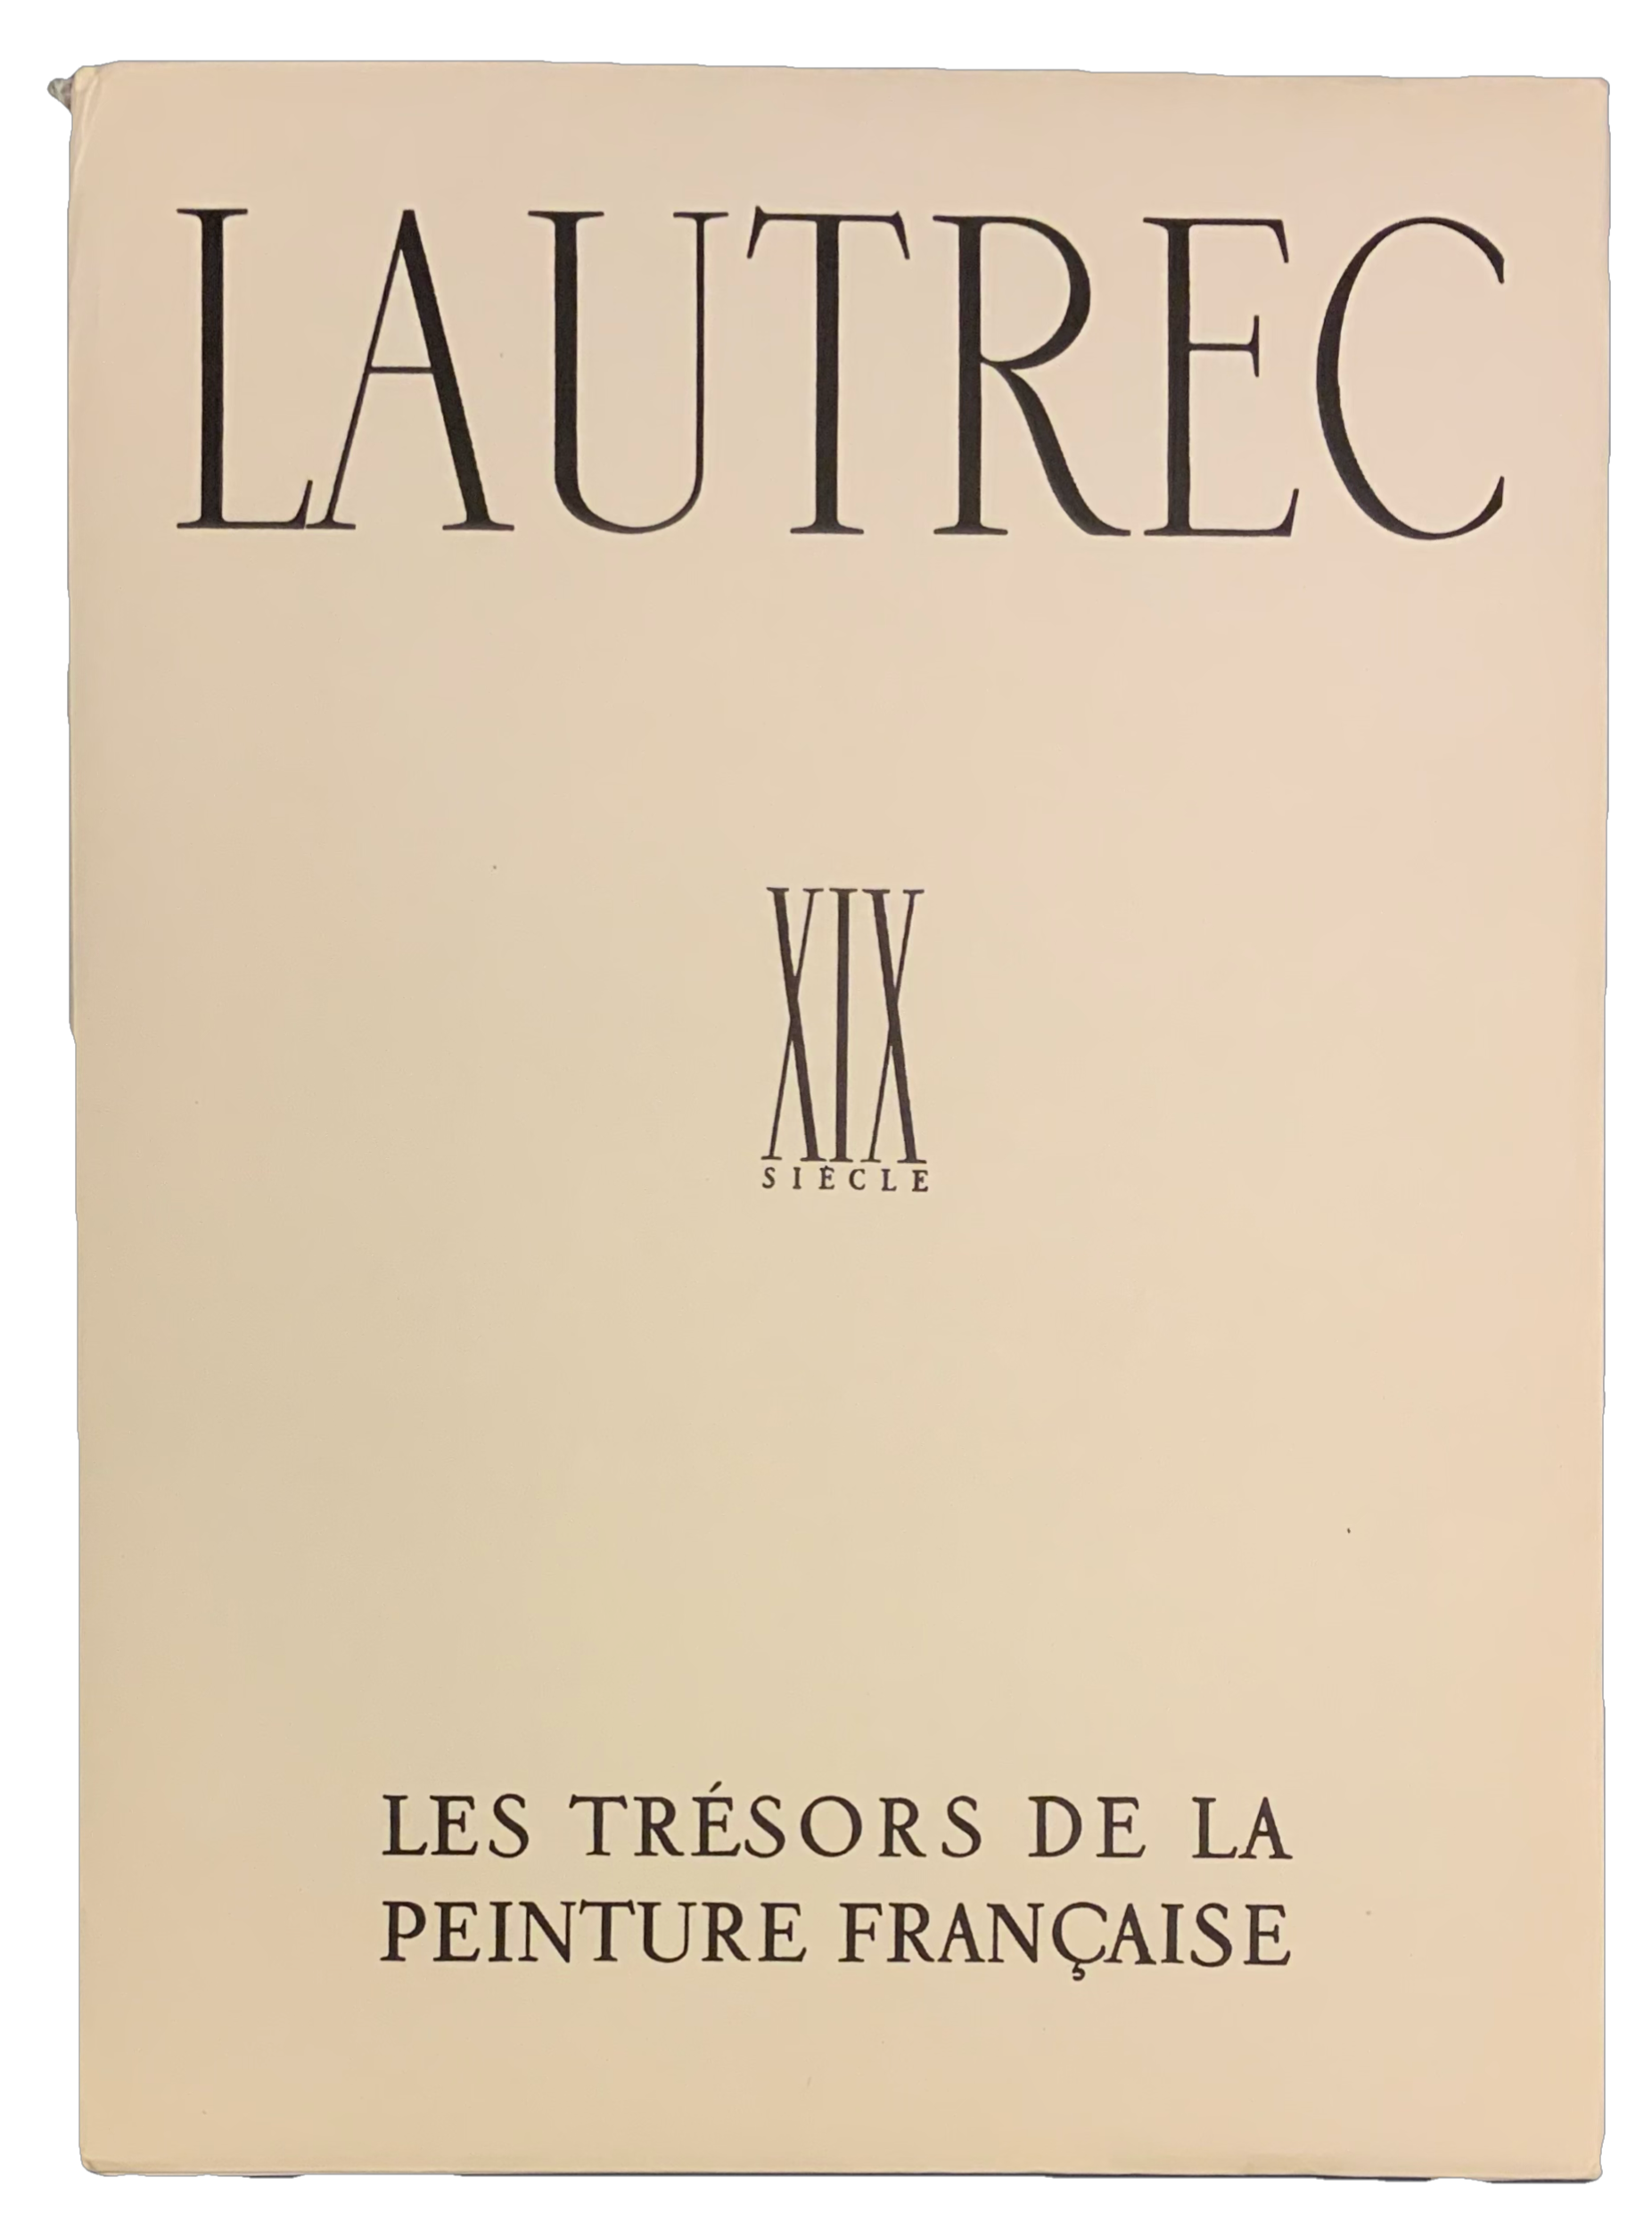 Lautrec album